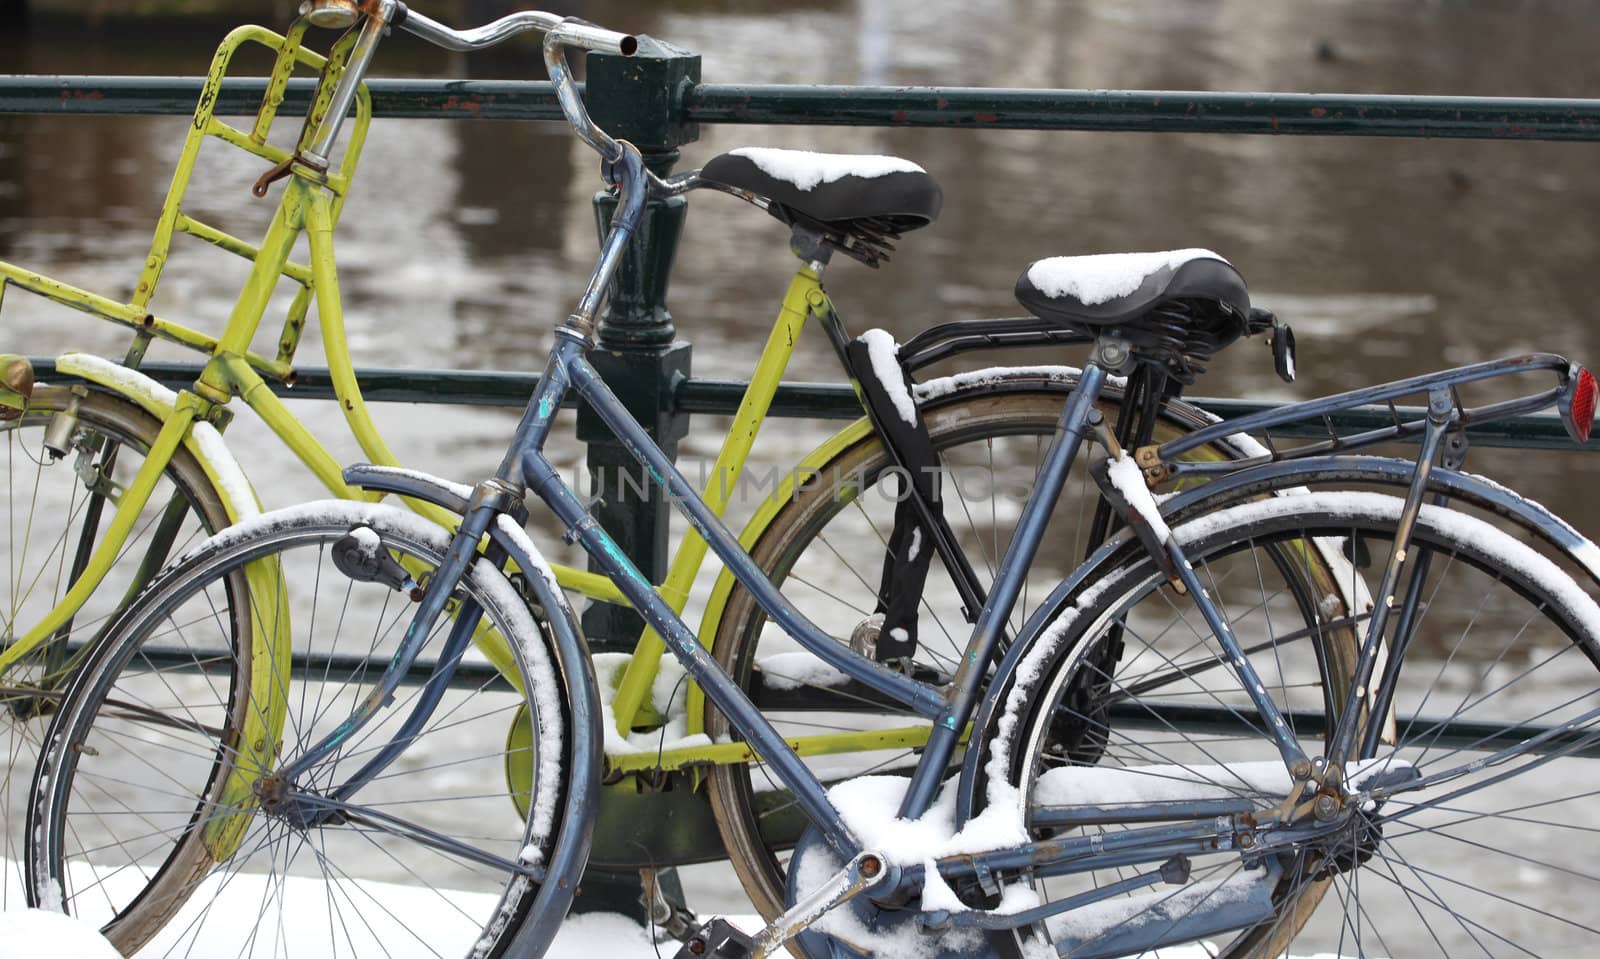 Bikes in amsterdam by oscarcwilliams